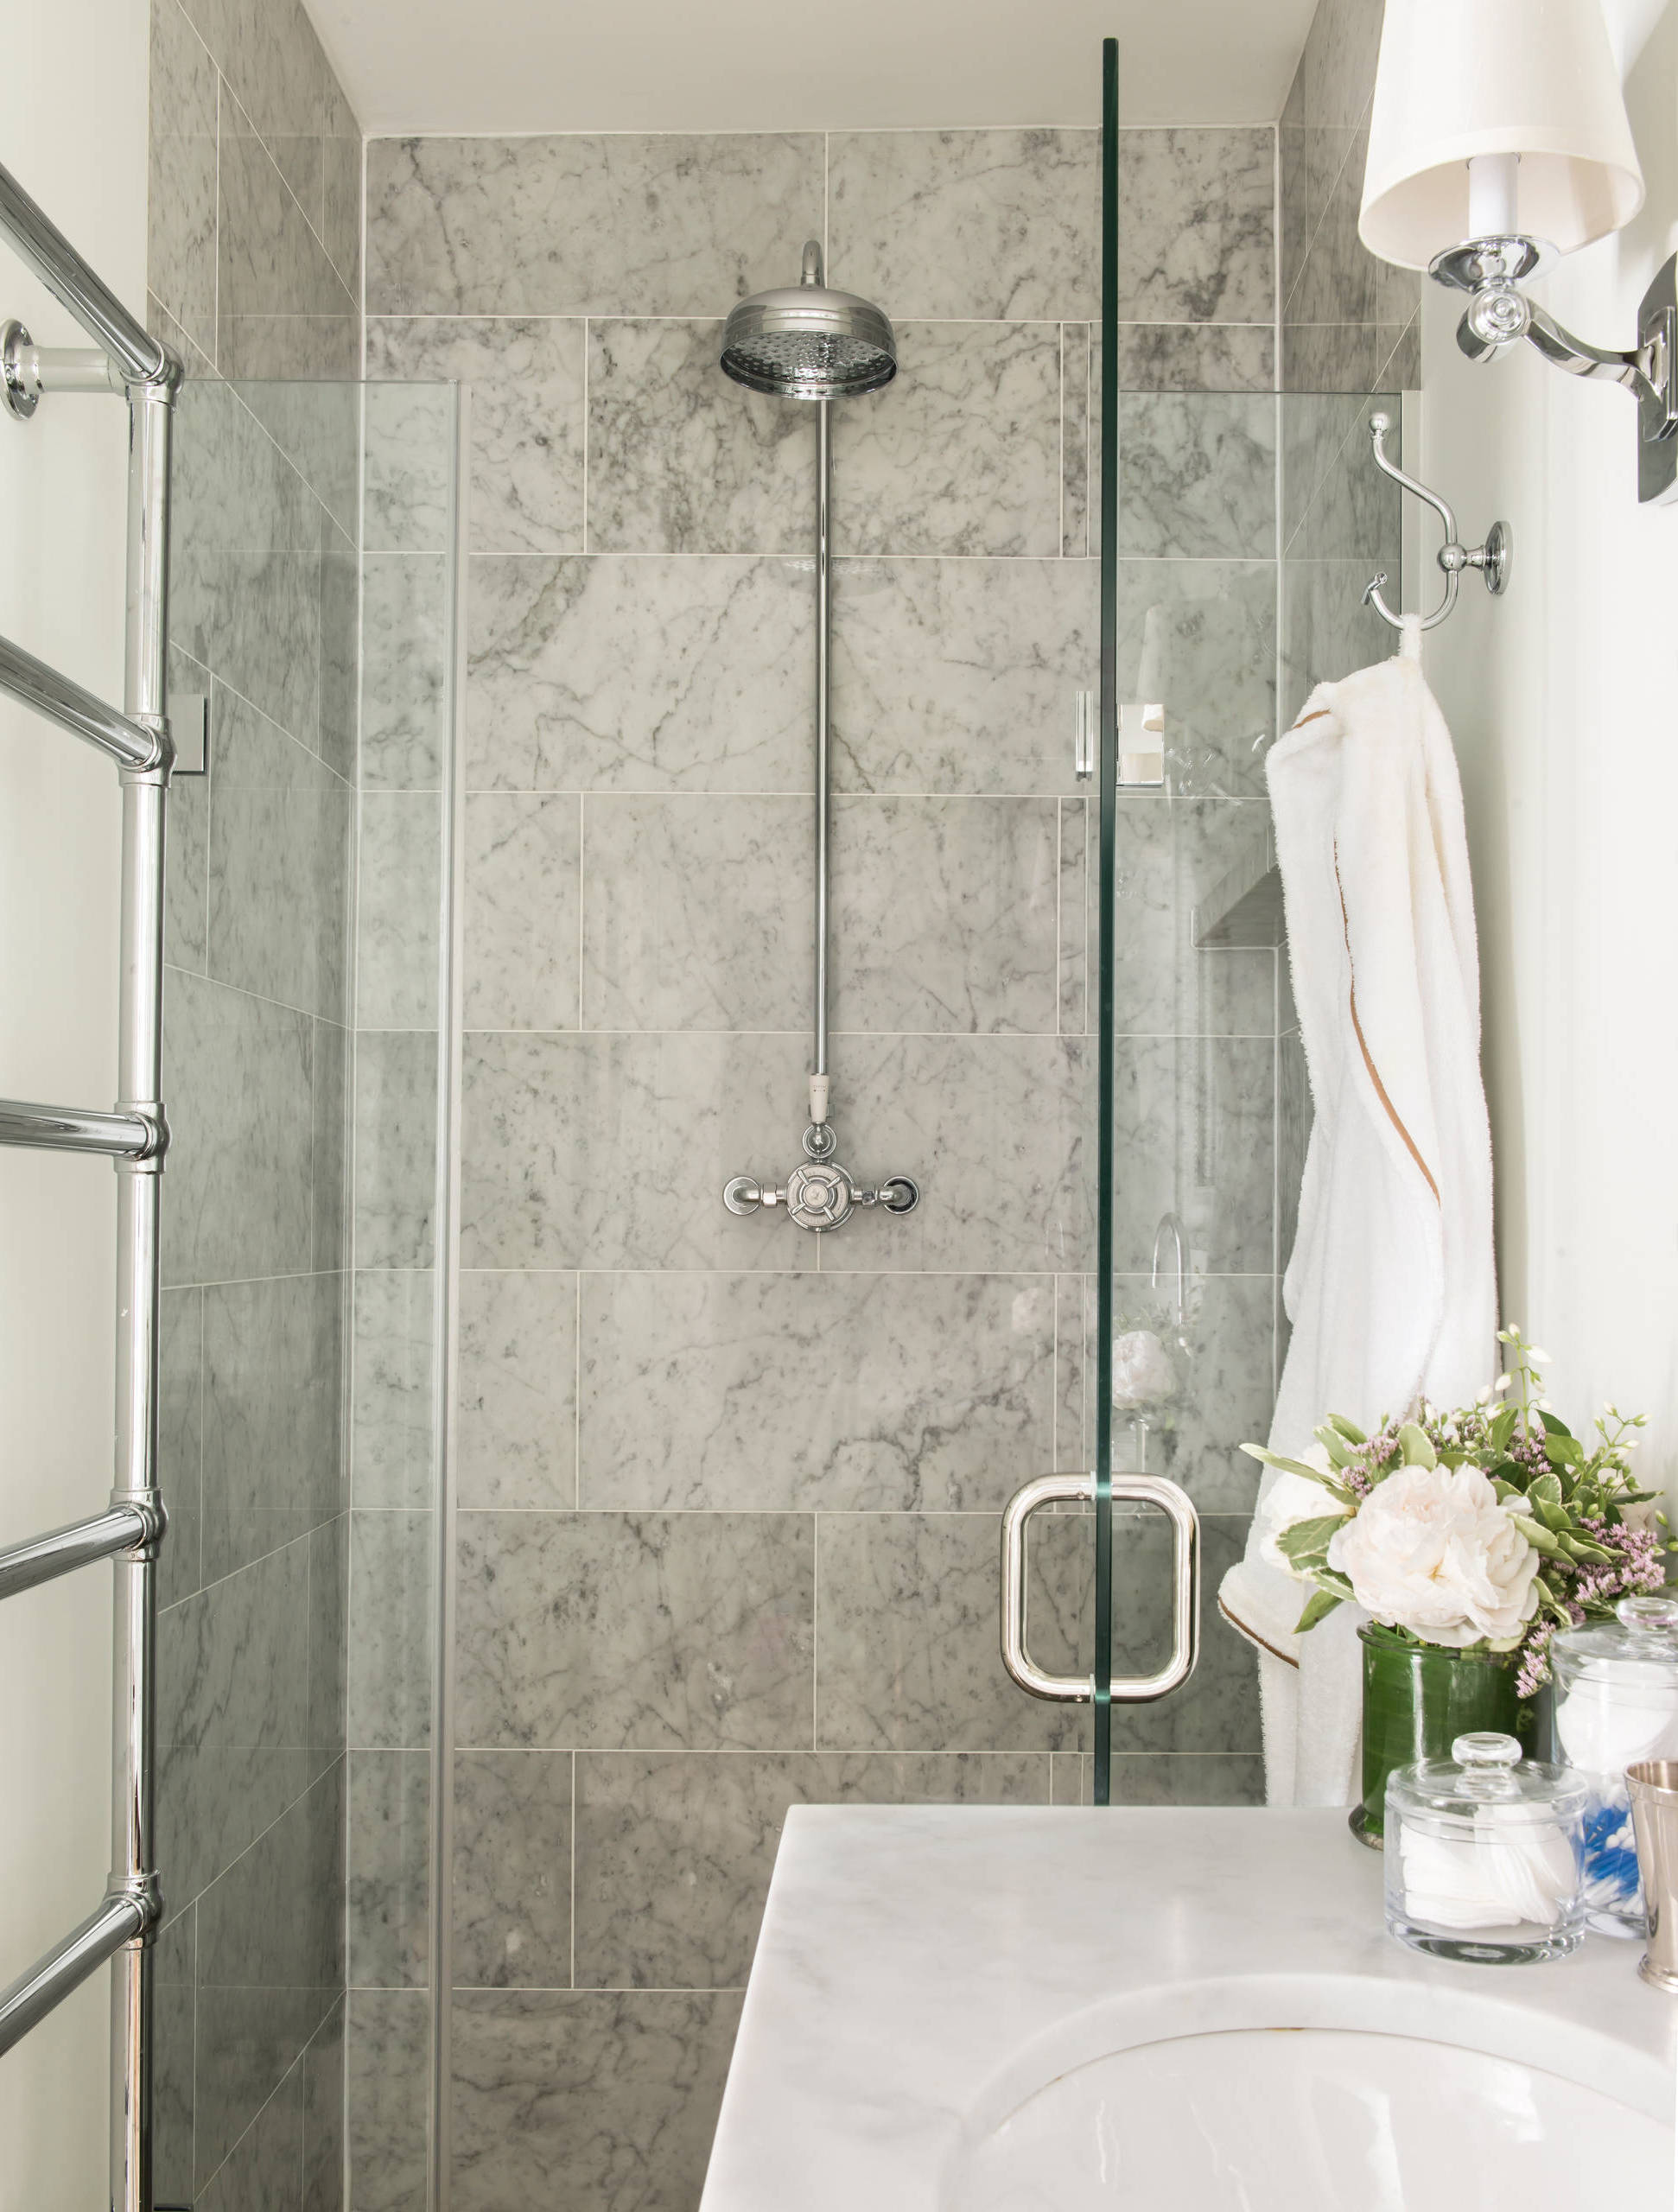 Zweigriffmischer werden heute vor allem in Retro-Badezimmern verwendet, sind aber auch in luxuriös eingerichteten Räumen zu finden.